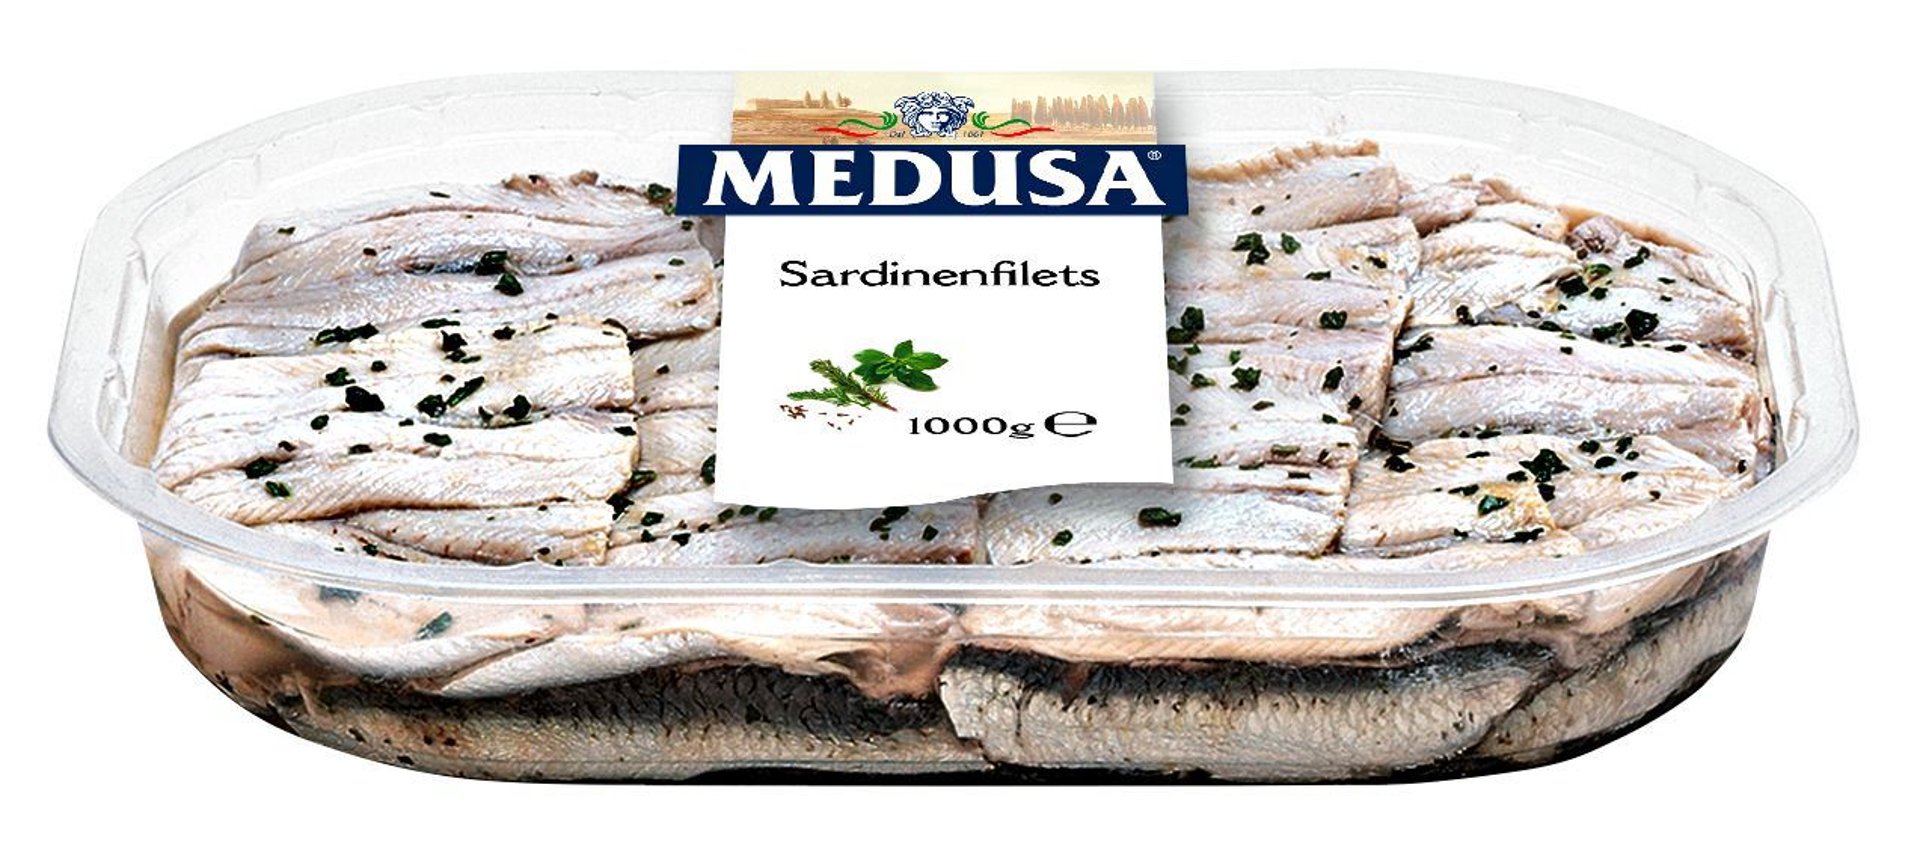 Cesare - Medusa Sardinenfilets mariniert eingelegt in Sonnenblumenöl 1 kg Karton